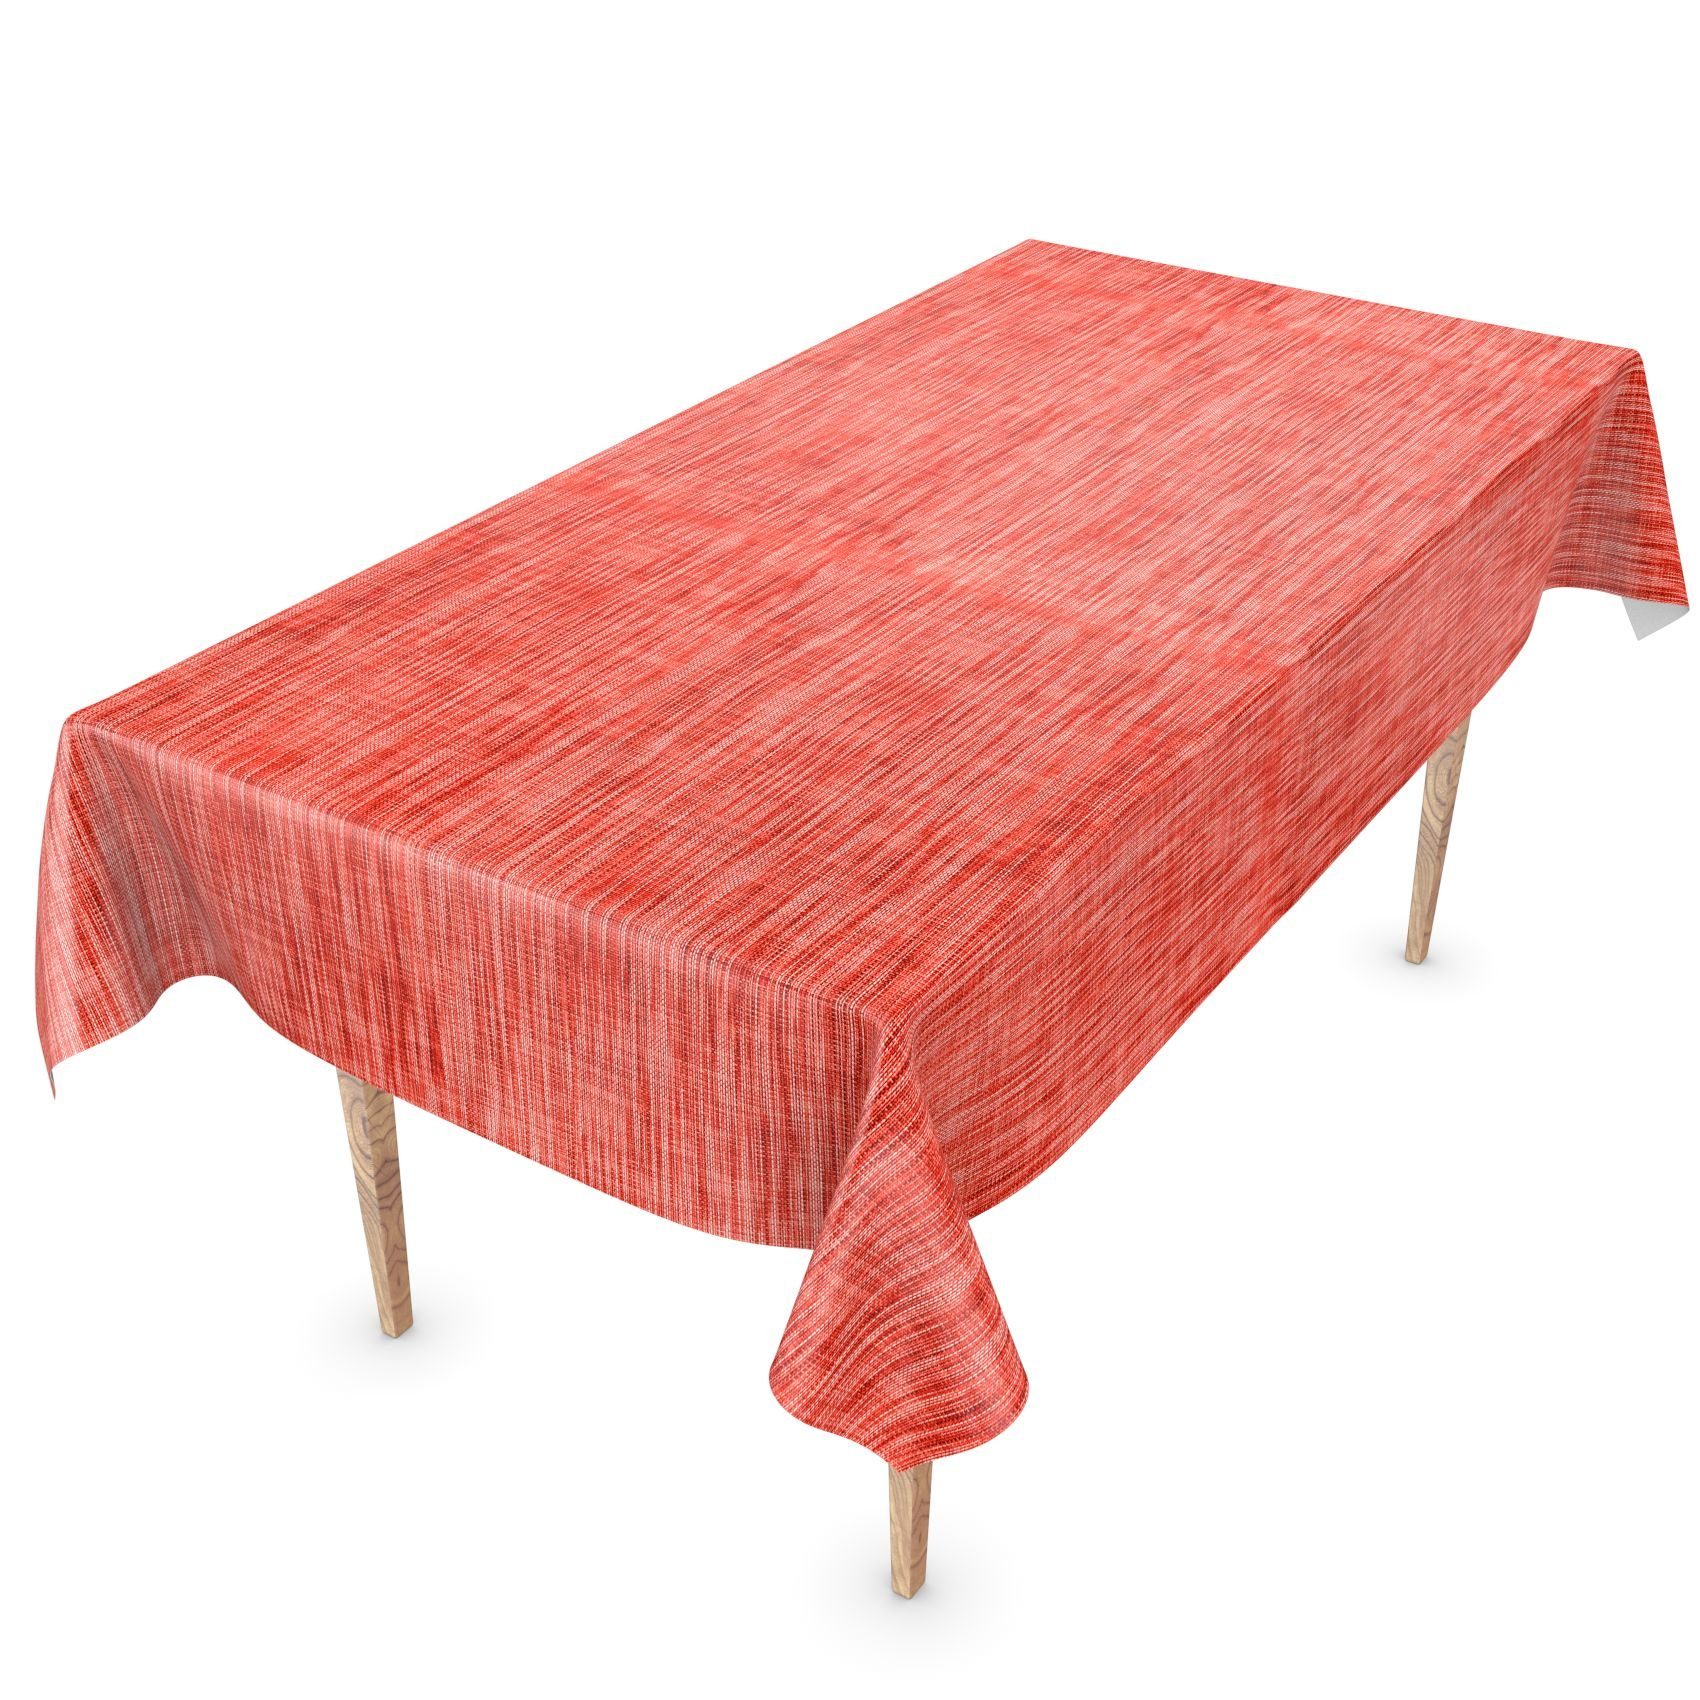 ANRO Tischdecke Tischdecke Wachstuch Einfarbig Rot Robust Wasserabweisend Breite 140, Glatt